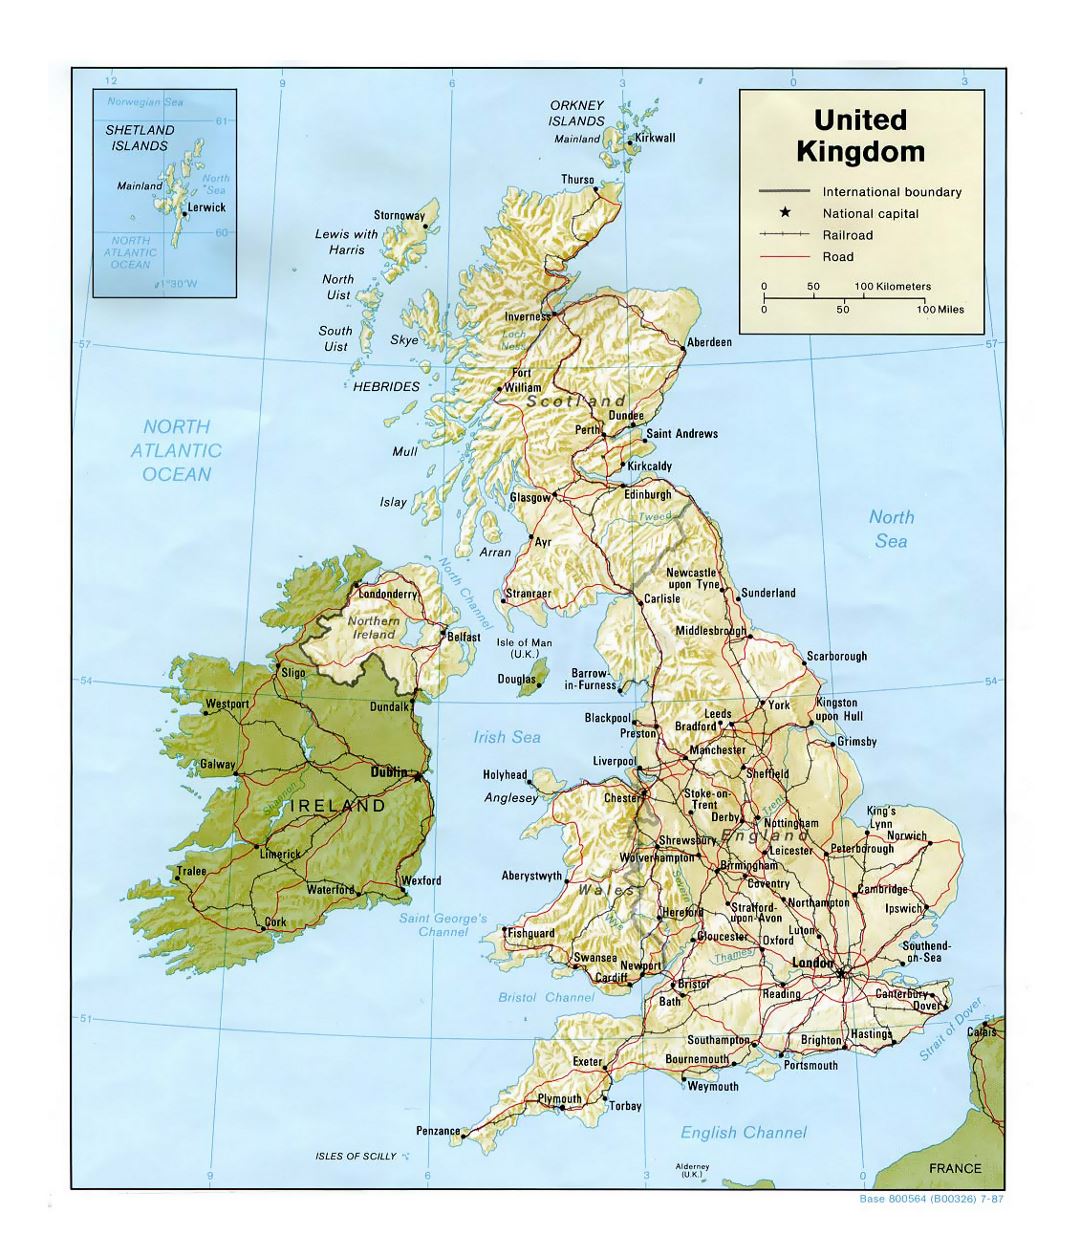 Detallado mapa político del Reino Unido con relieve, carreteras, ferrocarriles y ciudades principales - 1987